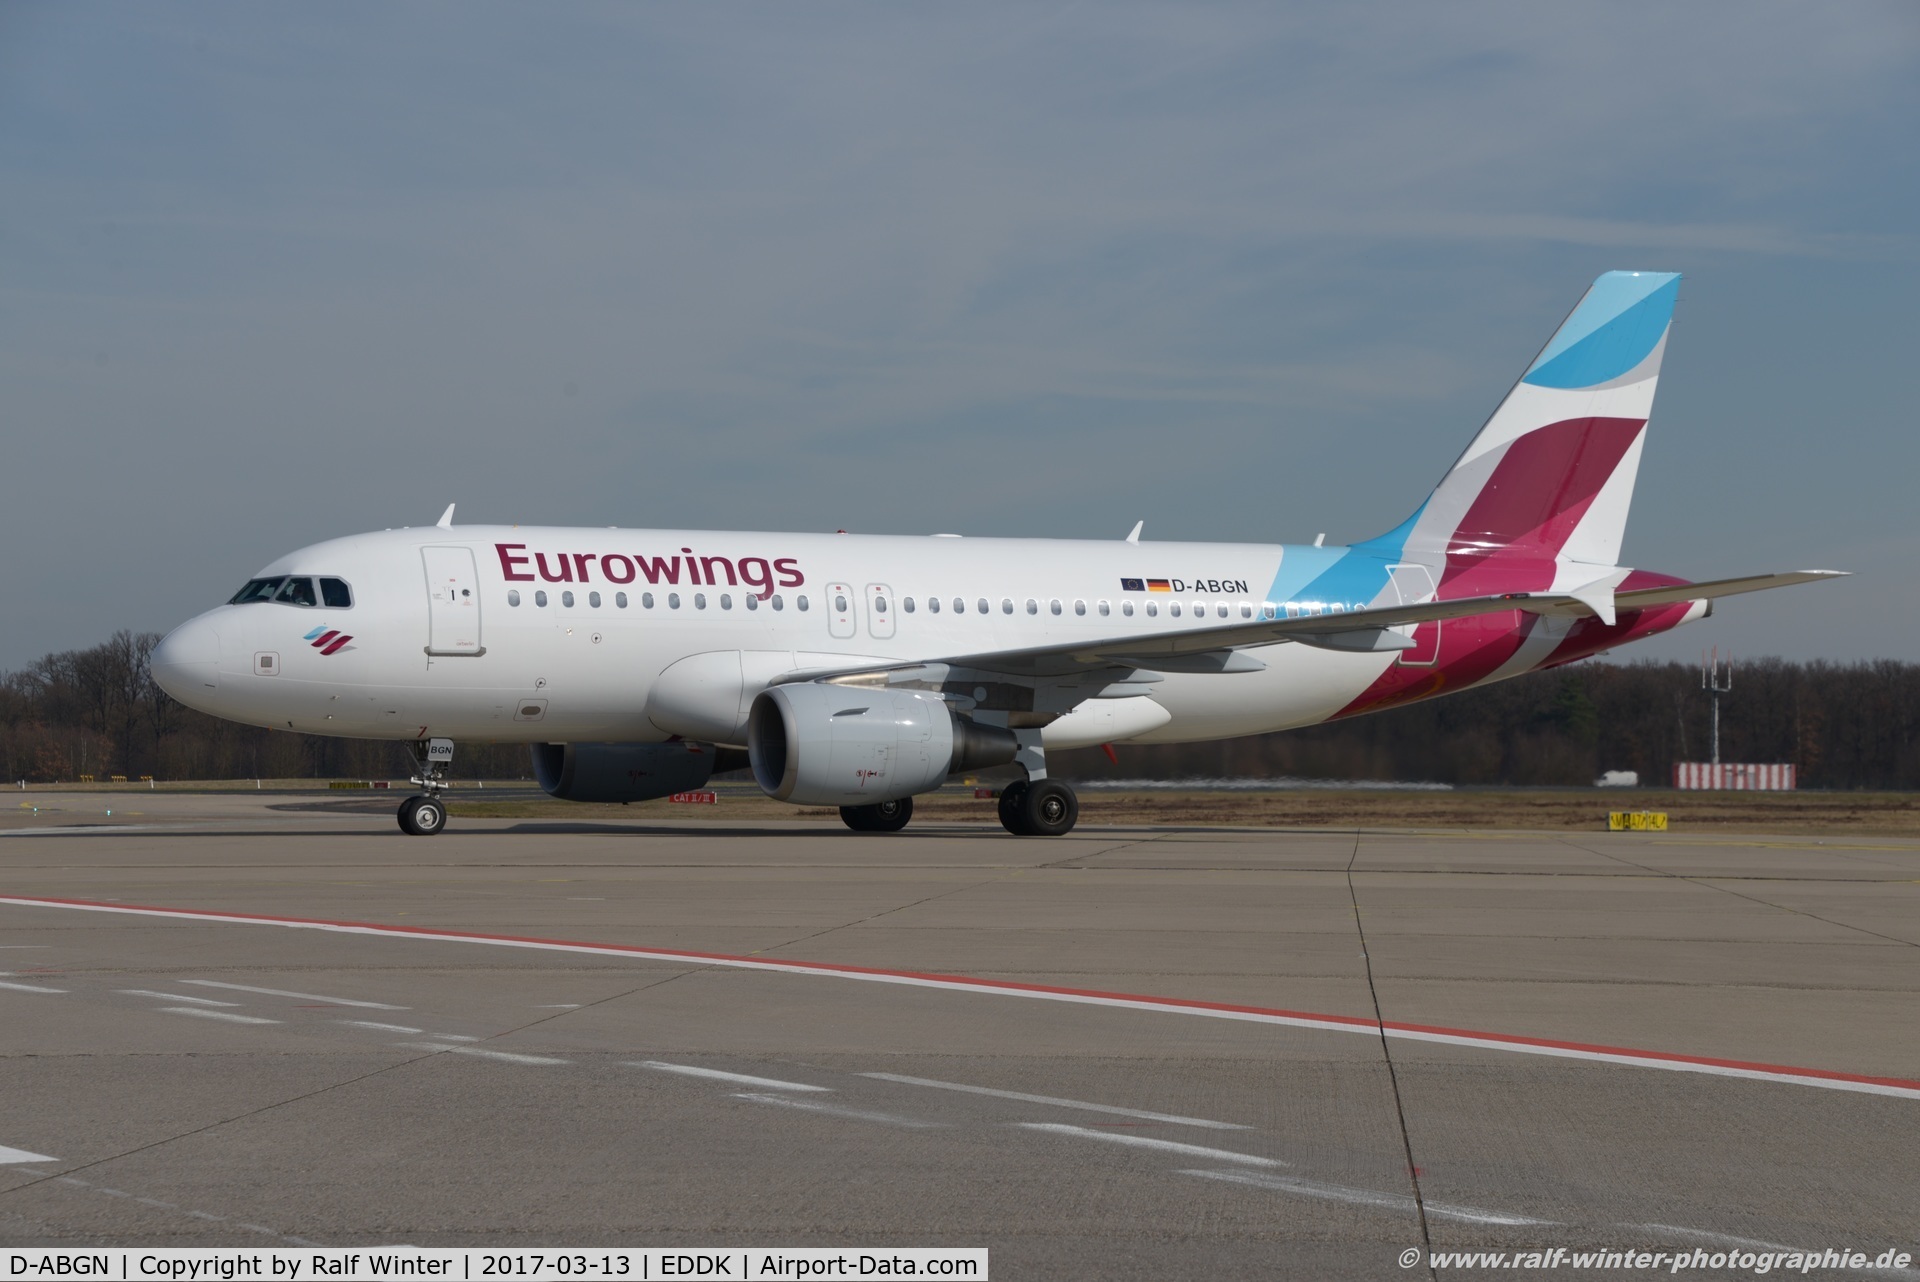 D-ABGN, 2008 Airbus A319-112 C/N 3661, Airbus A319-112 - EW EWG Eurowings ex Air Berlin - 3661 - D-ABGN - 13.03.2017 - CGN